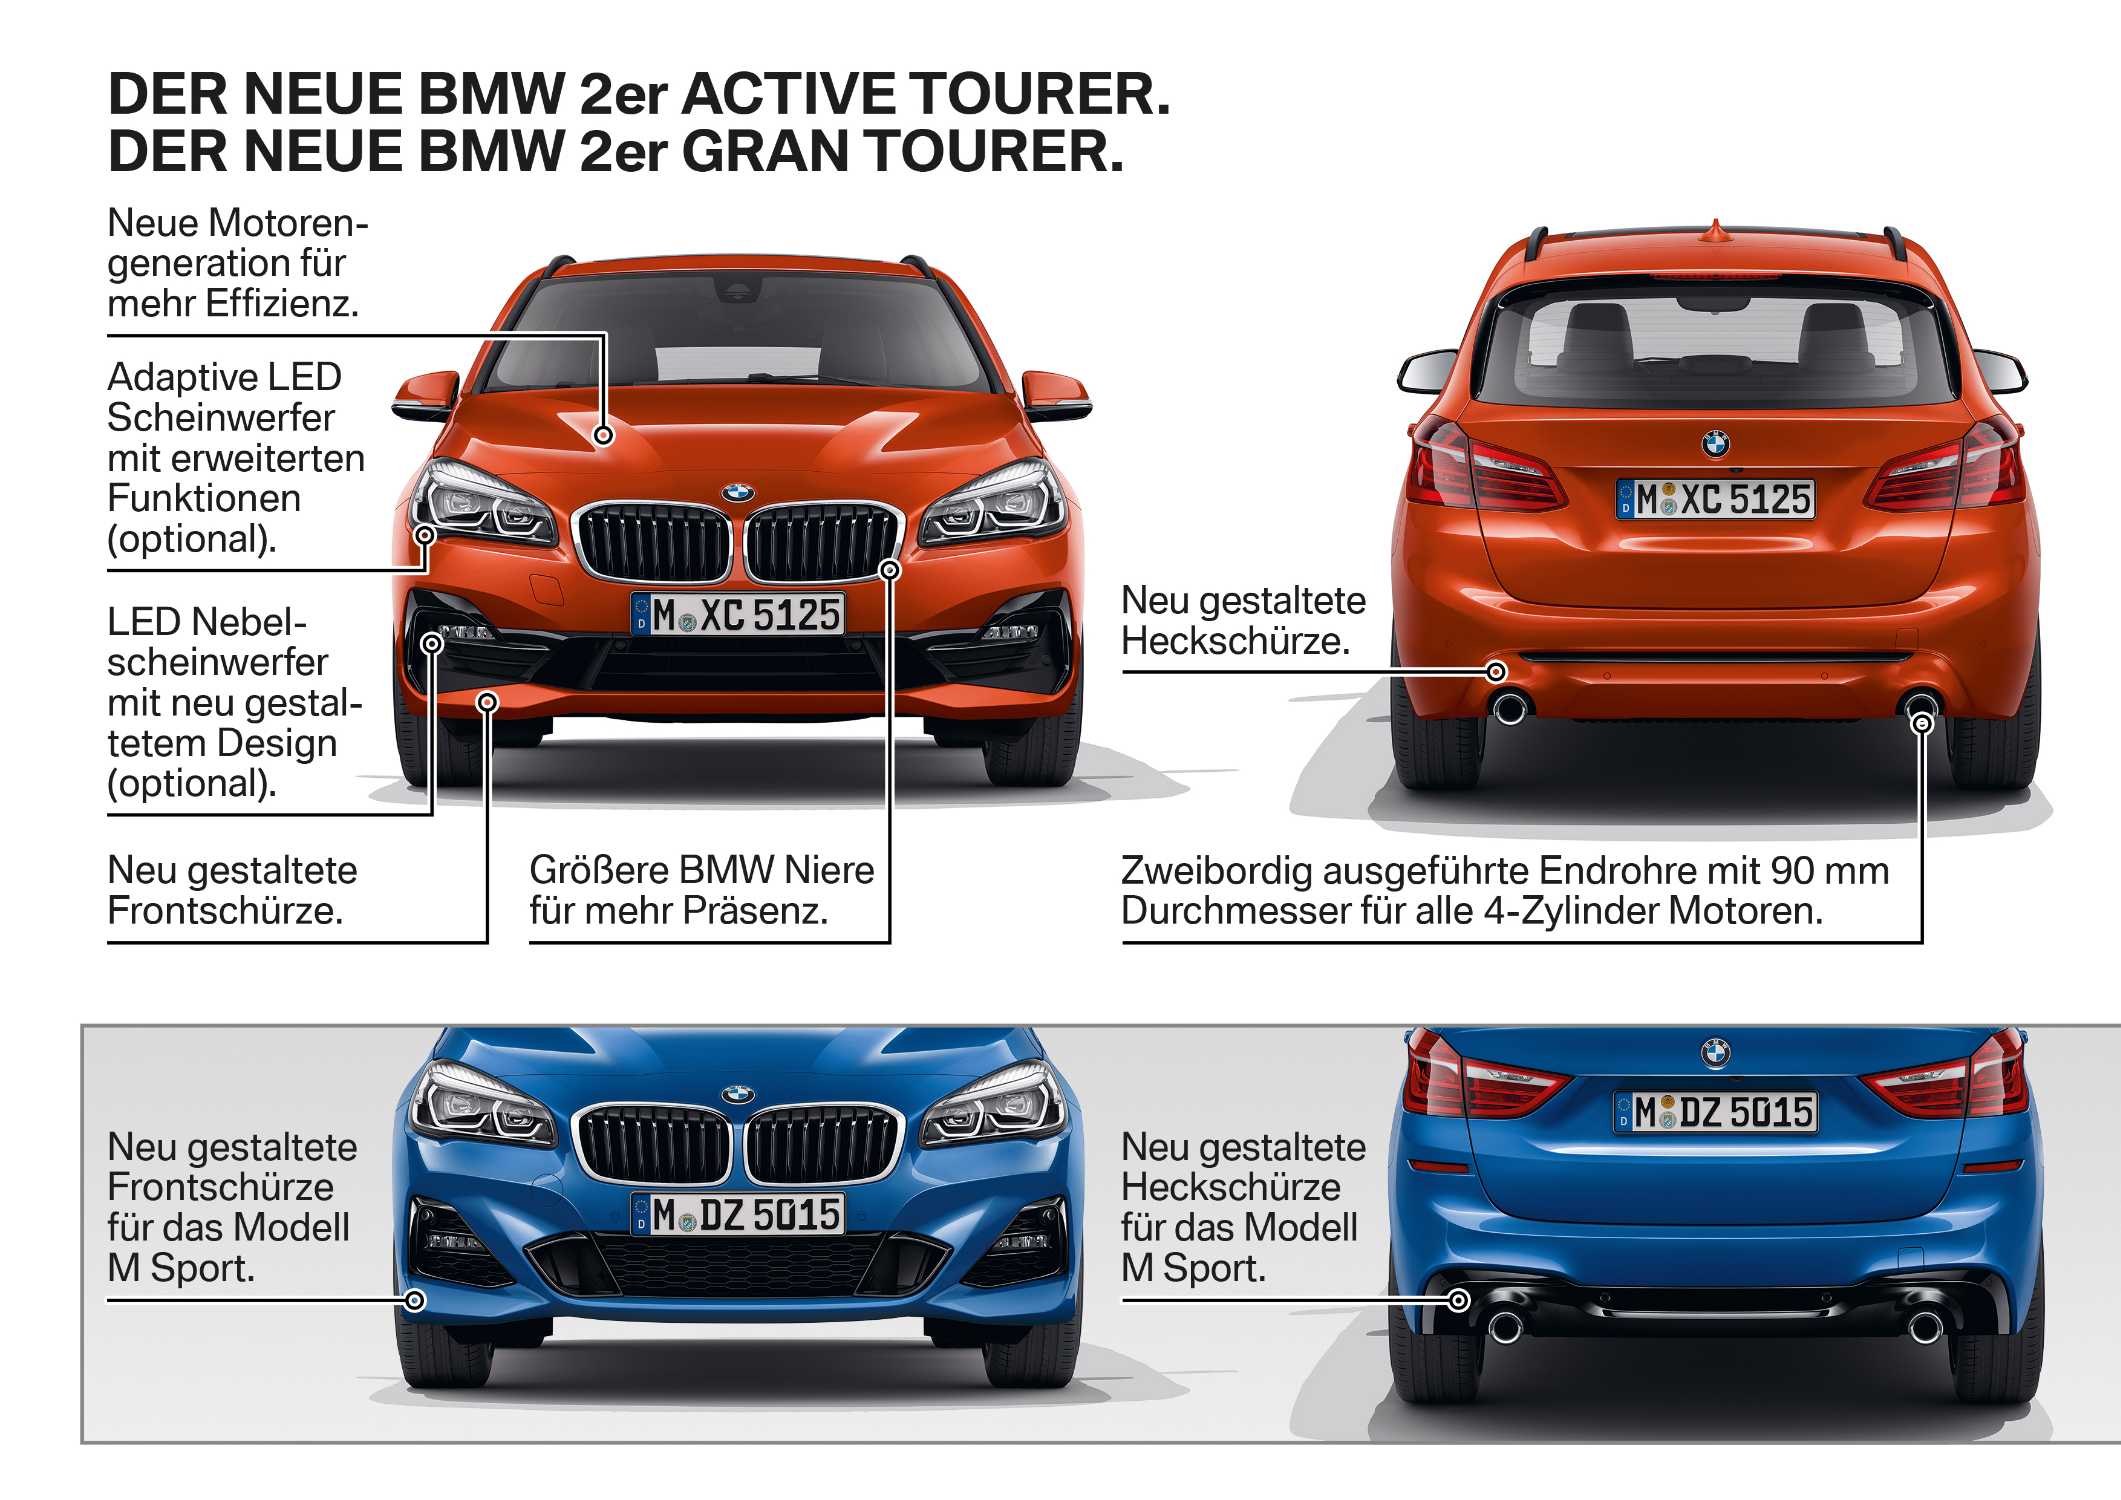 Der neue BMW 2er Active Tourer. Der neue BMW 2er Gran Tourer (01/2018).